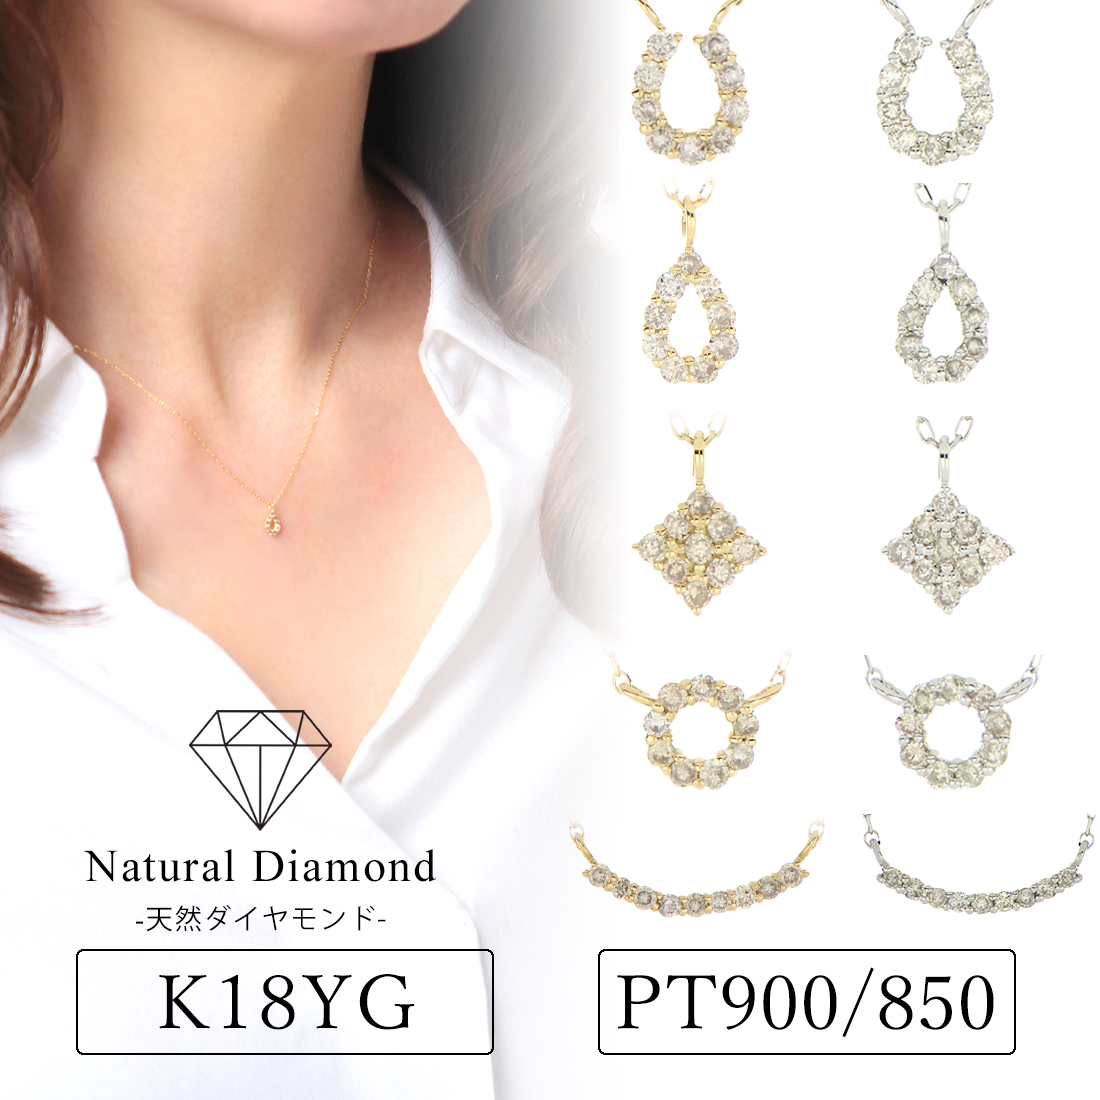 【100%新品定番】2石のダイヤモンドがおしゃれなネックレス Pt950 アクセサリー